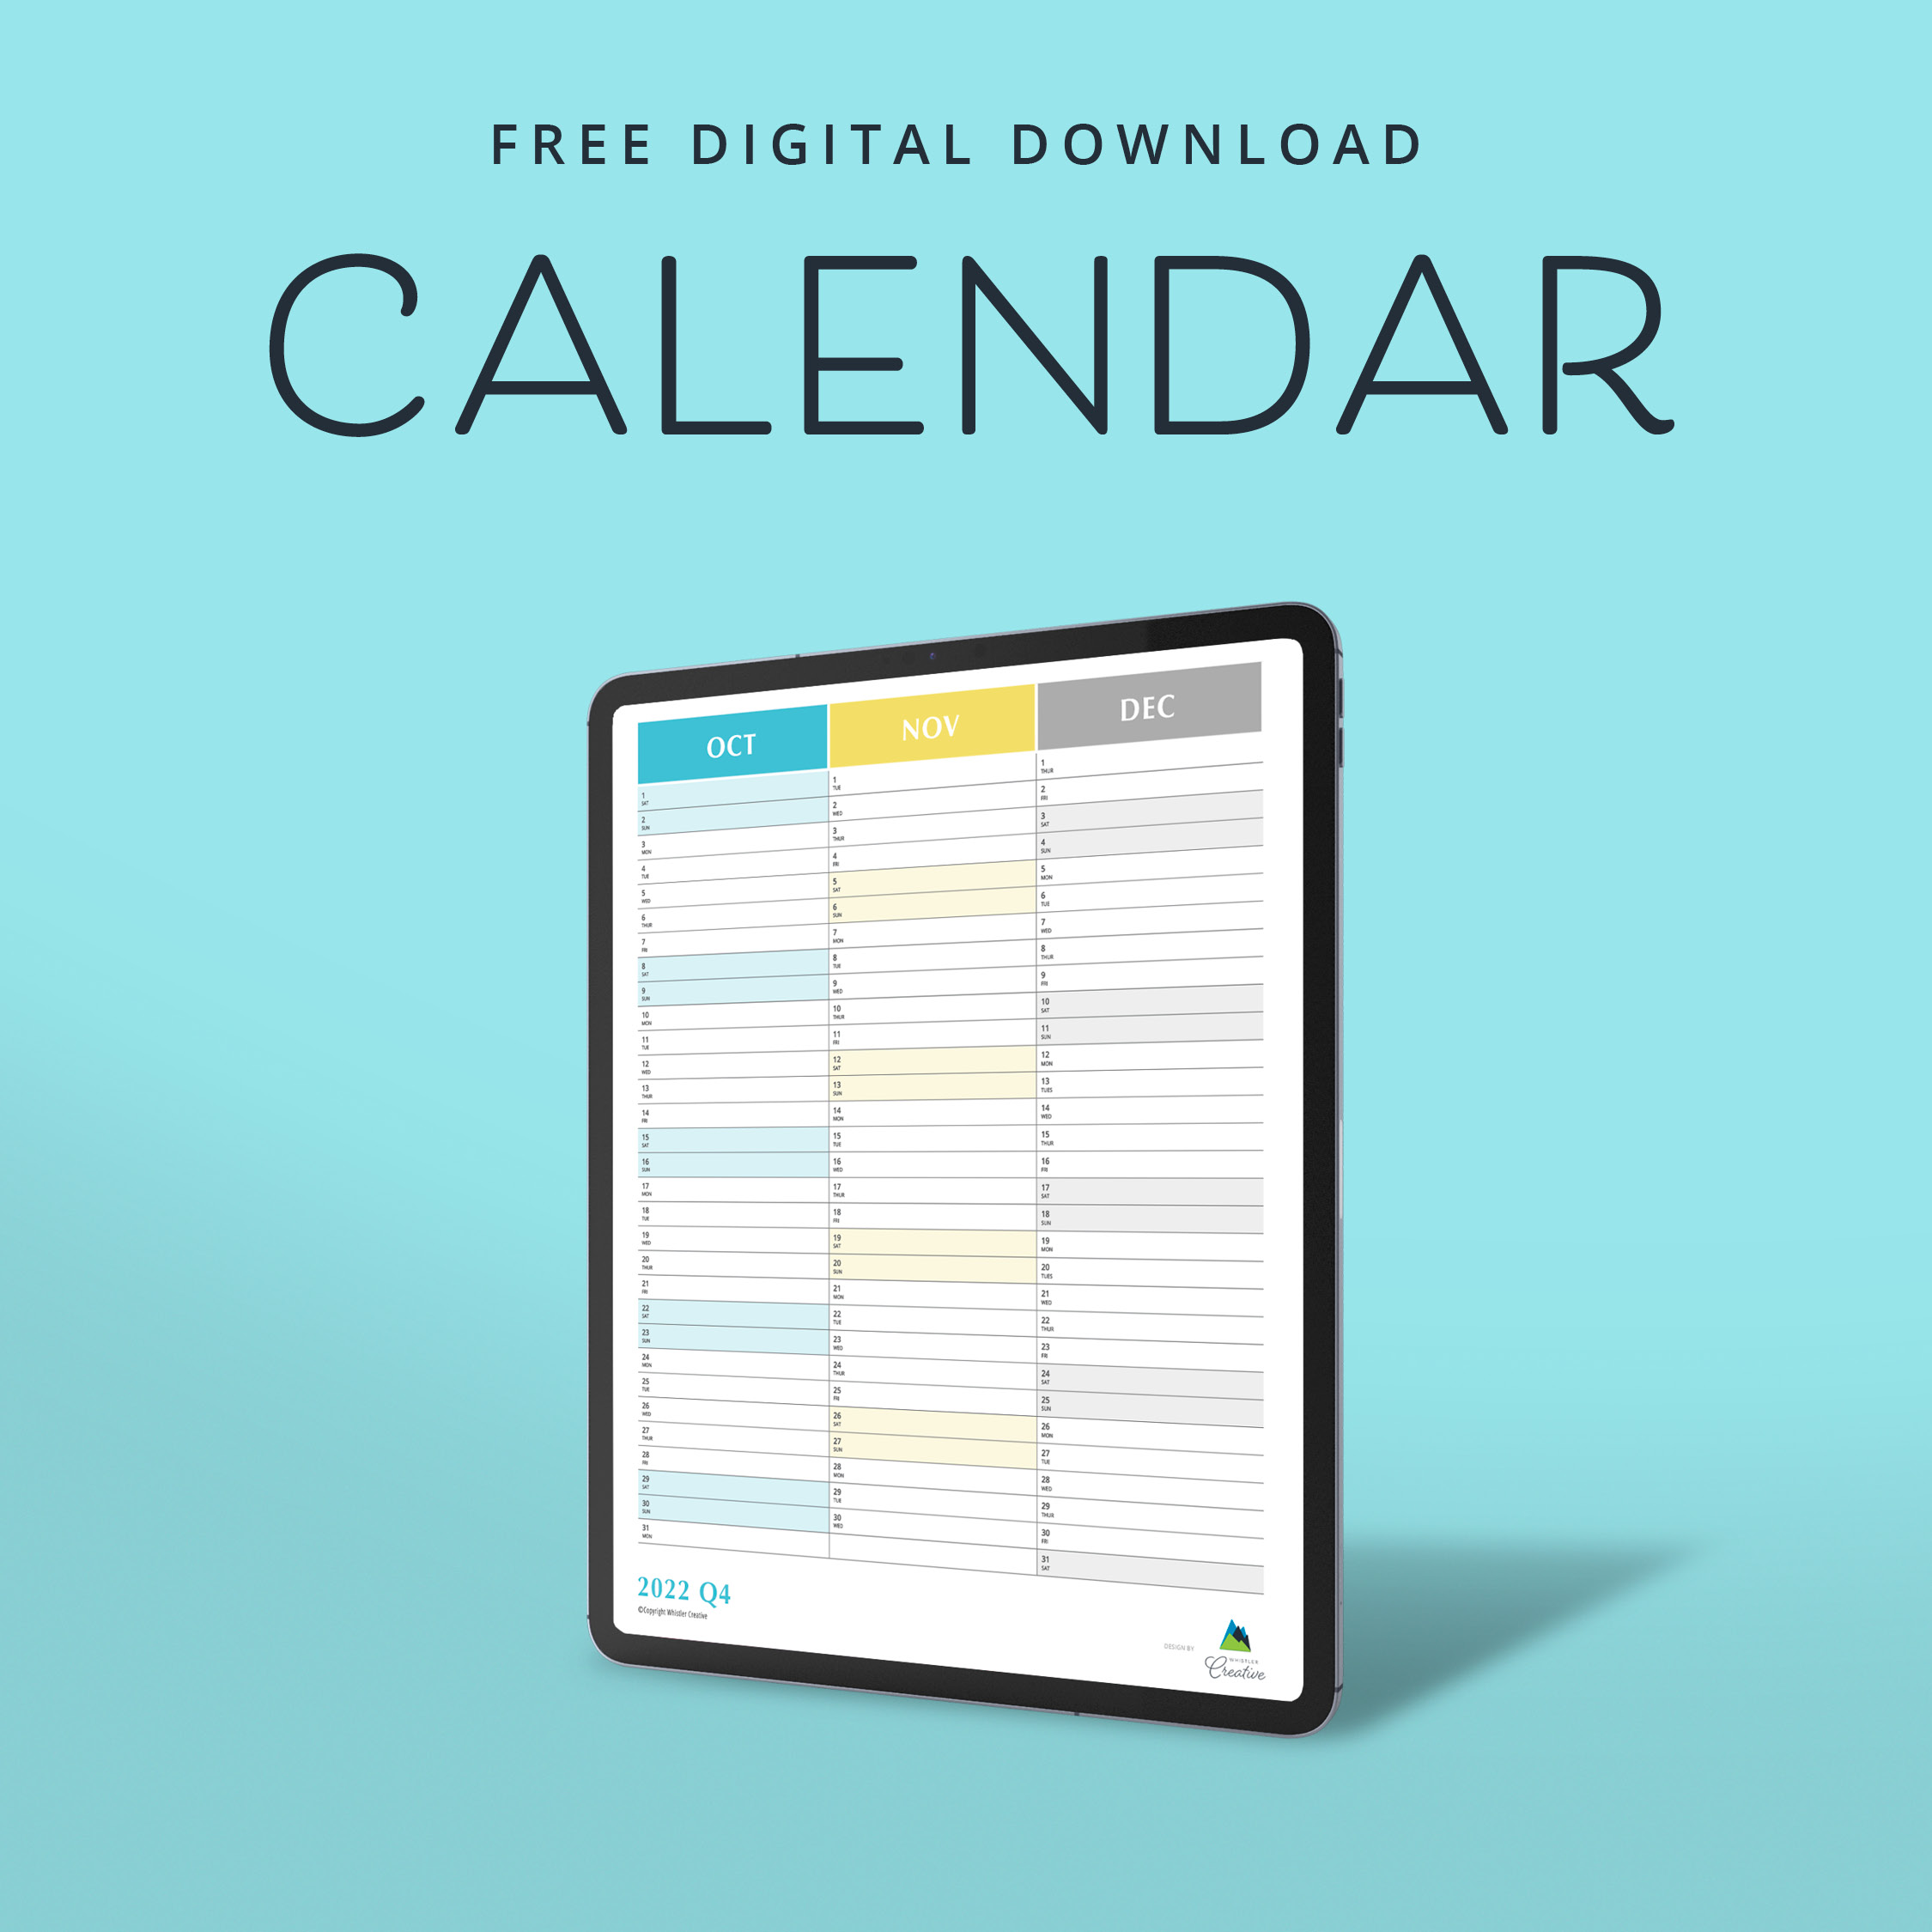 Get your hands on a fantastic free digital calendar download.